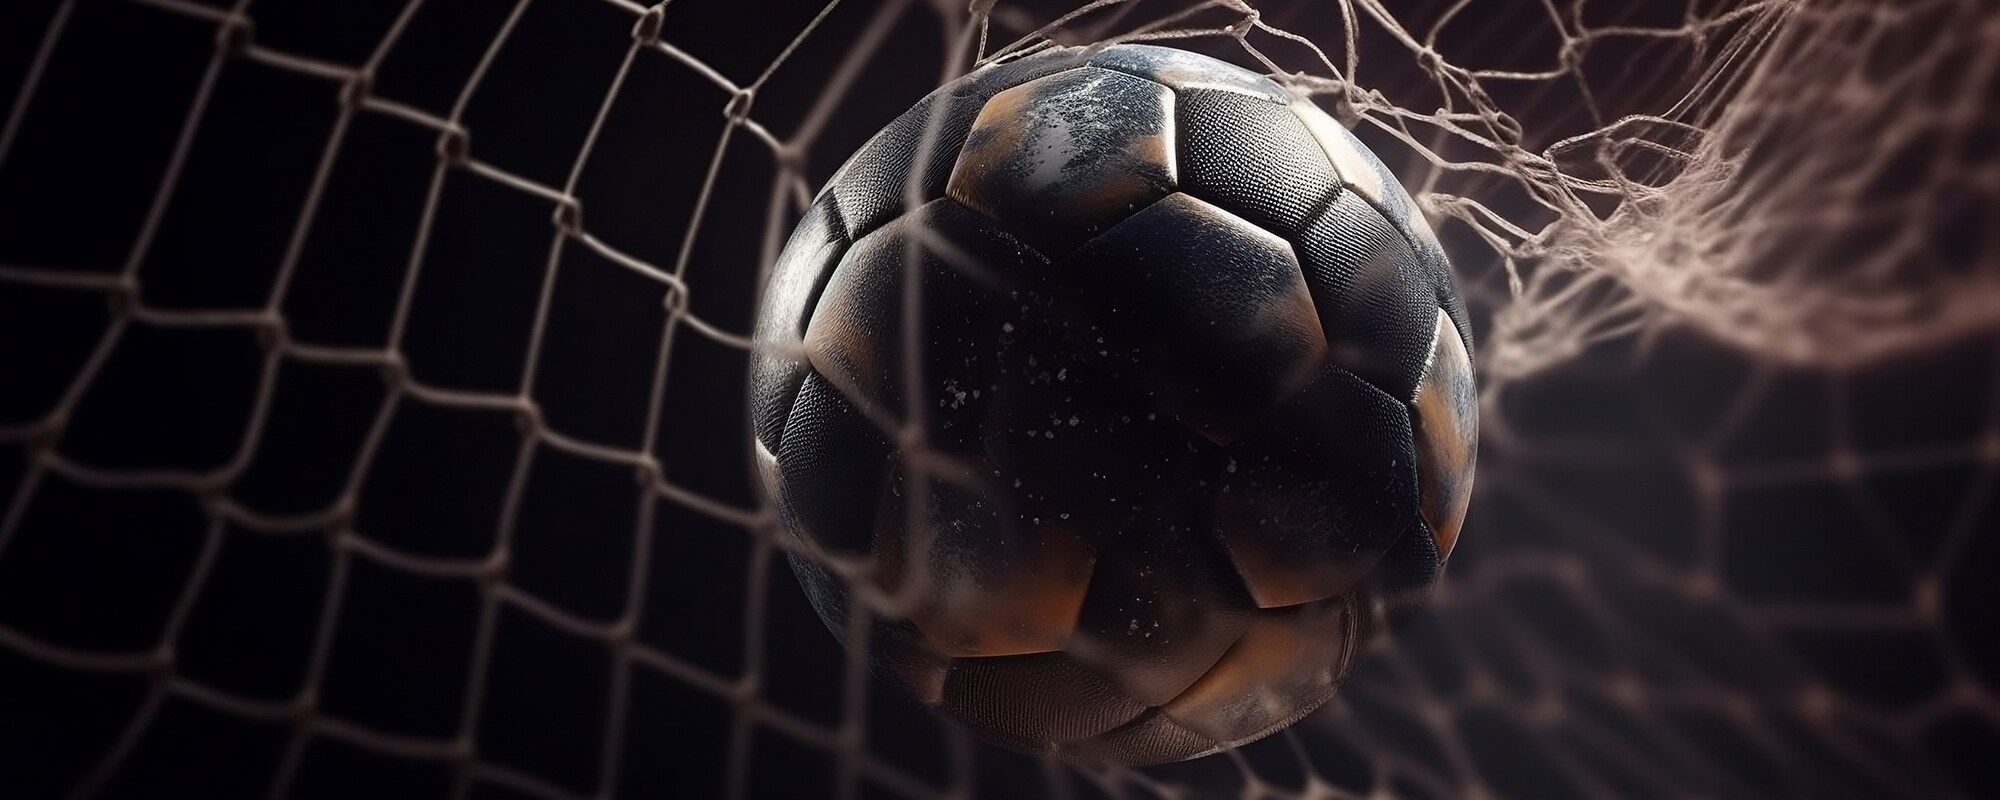 soccer ball entering the net